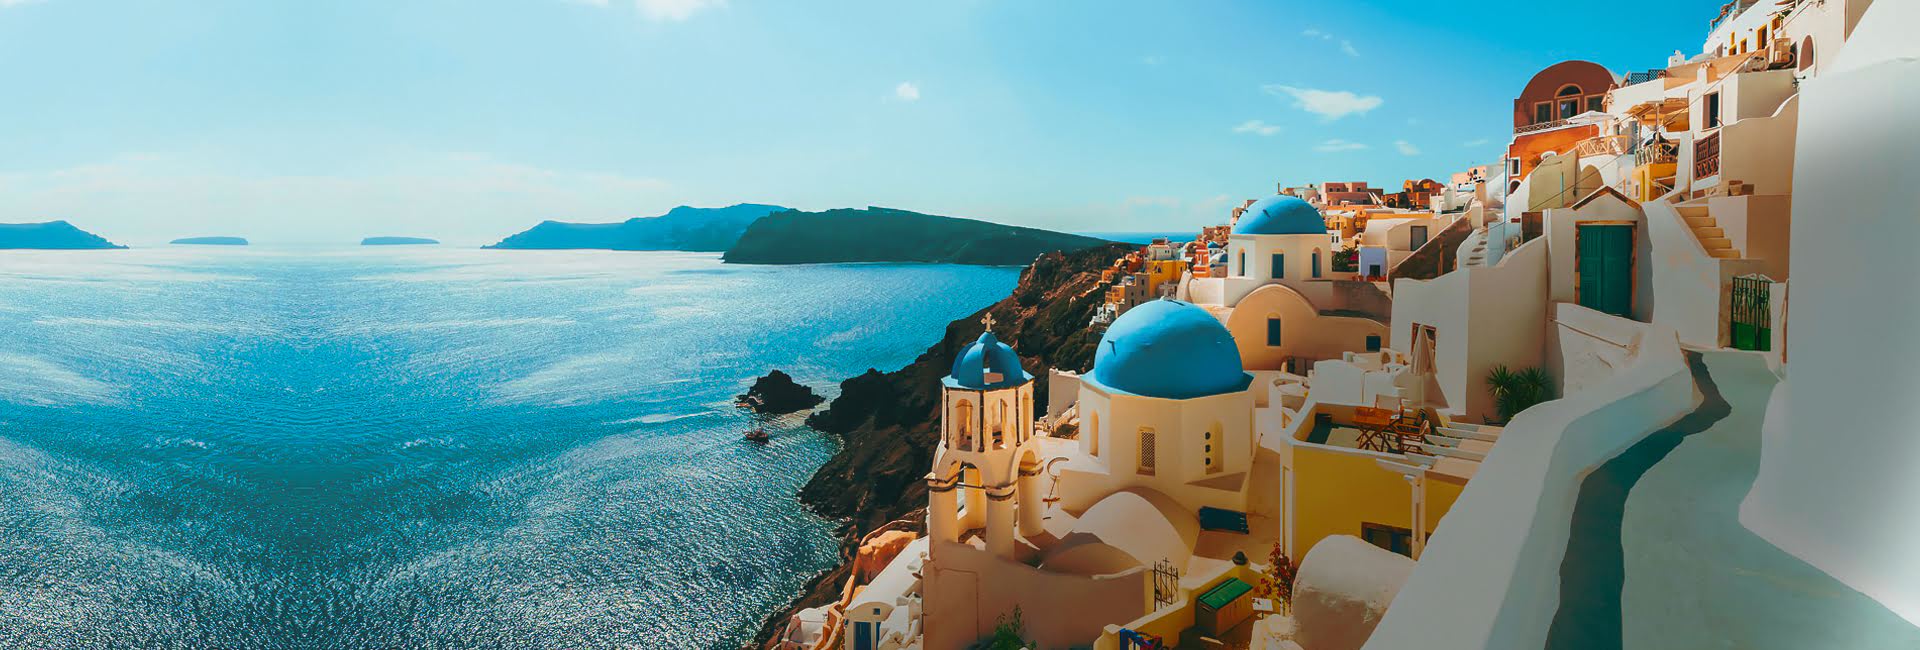 Yunan Adaları Bileti Biletgen.com sizi dünyanın en yeni ve etkileyici yerlerine davet ediyor. | İlk durağınız için feribot rezervasyonunuzu şimdi yapın!